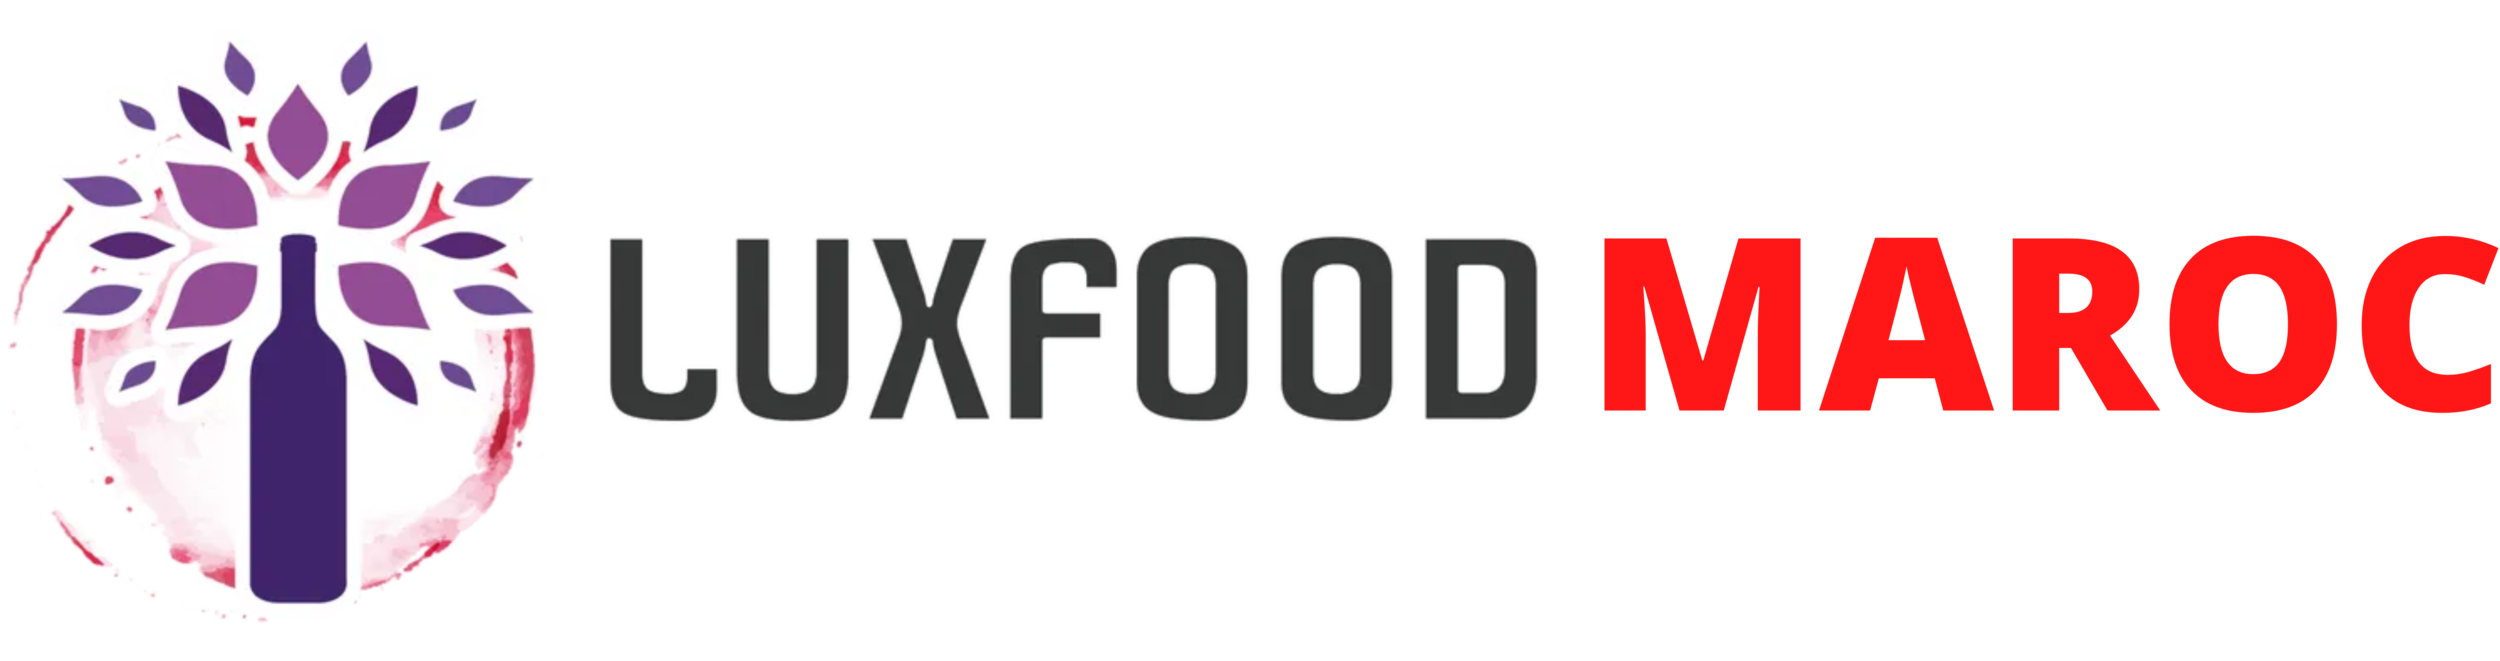 LuxFood-Maroc spécialiste des produits d' exception & de Luxe